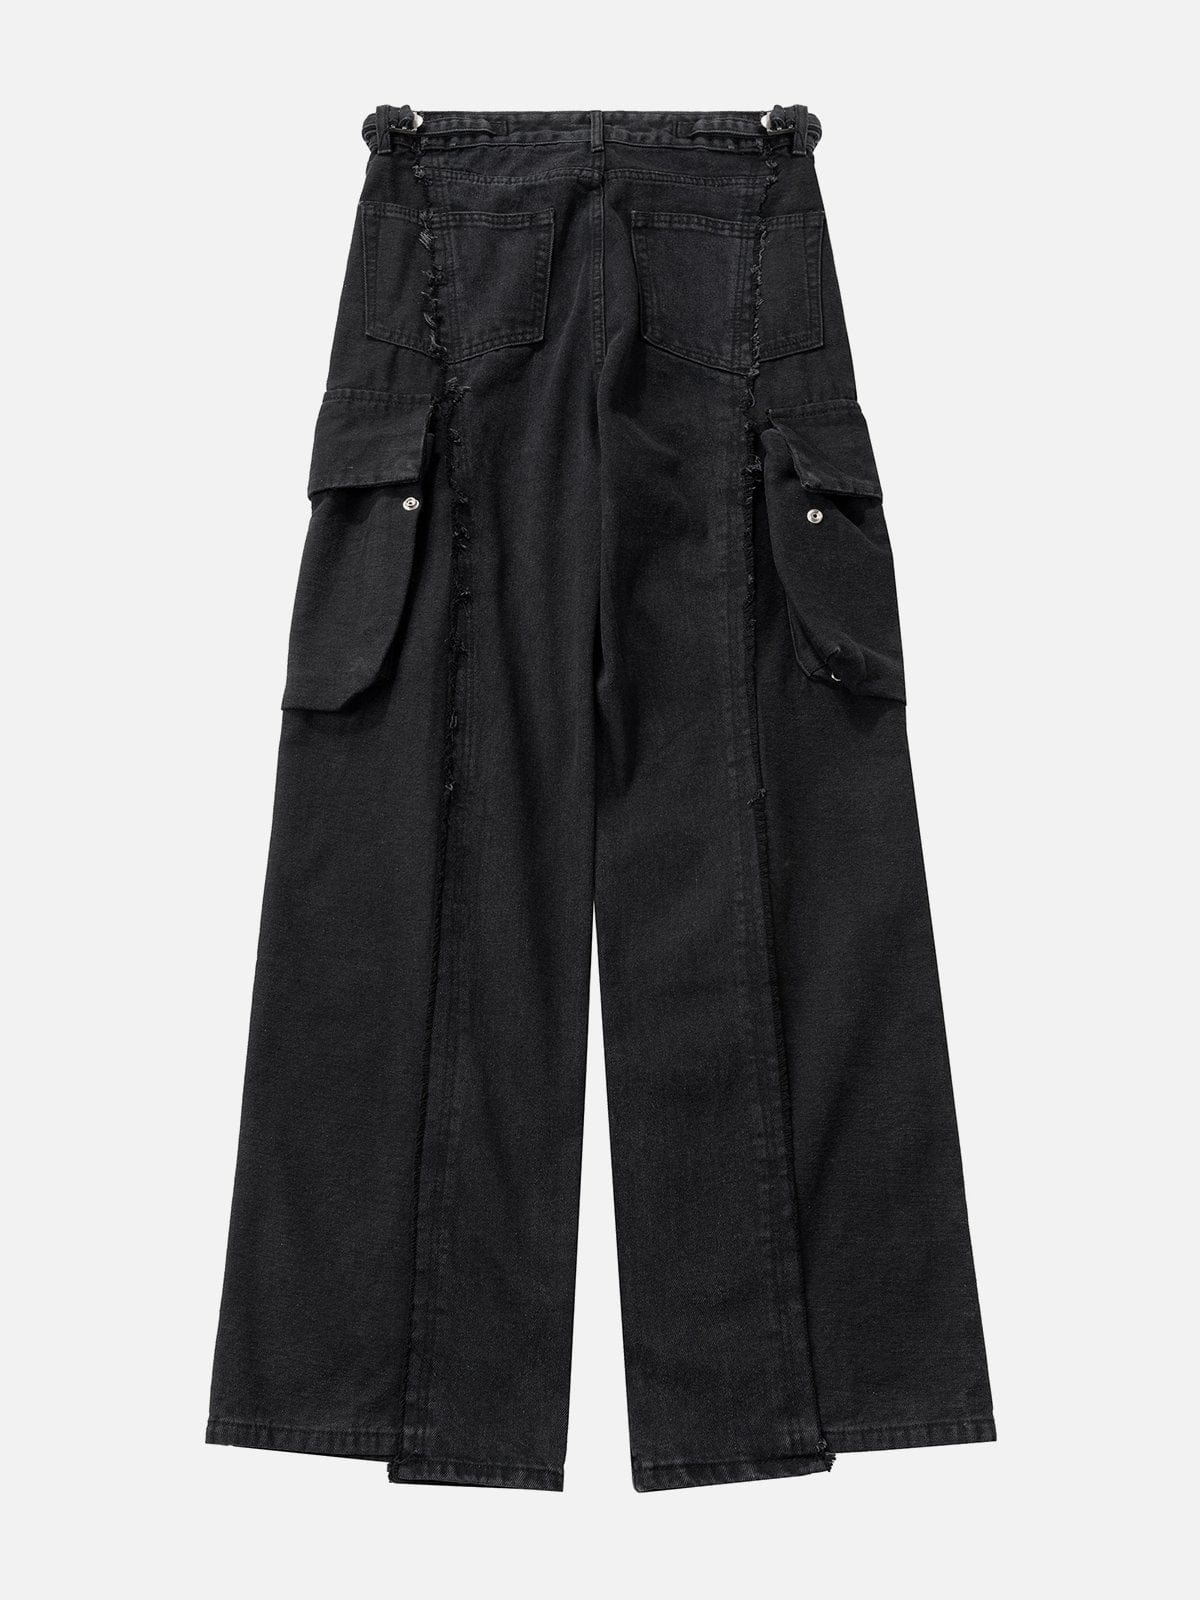 NEV Fringe Multiple Pockets Jeans